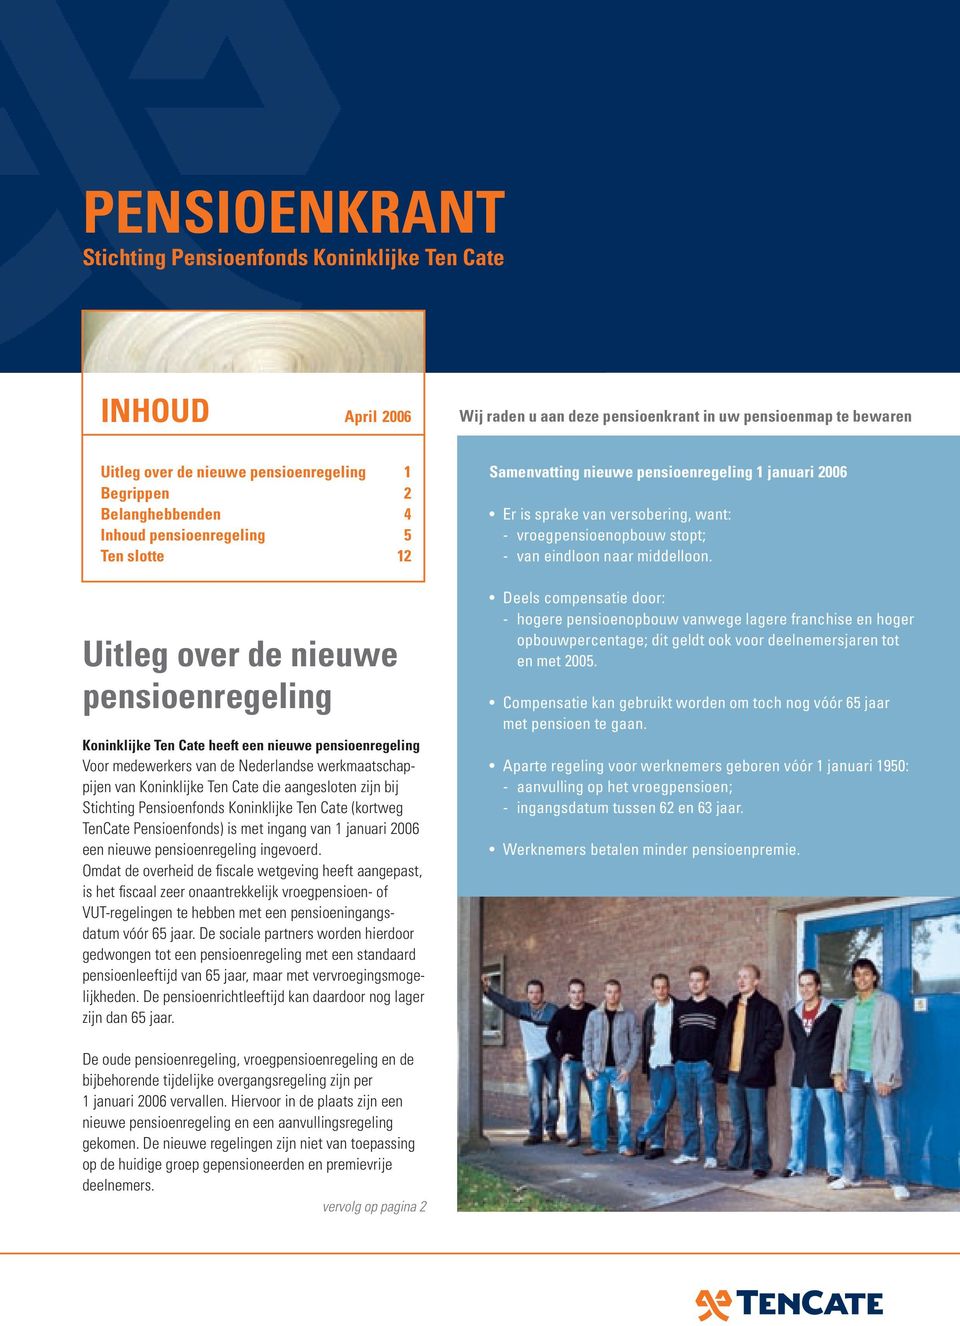 werkmaatschappijen van Koninklijke Ten Cate die aangesloten zijn bij Stichting Pensioenfonds Koninklijke Ten Cate (kortweg TenCate Pensioenfonds) is met ingang van 1 januari 2006 een nieuwe